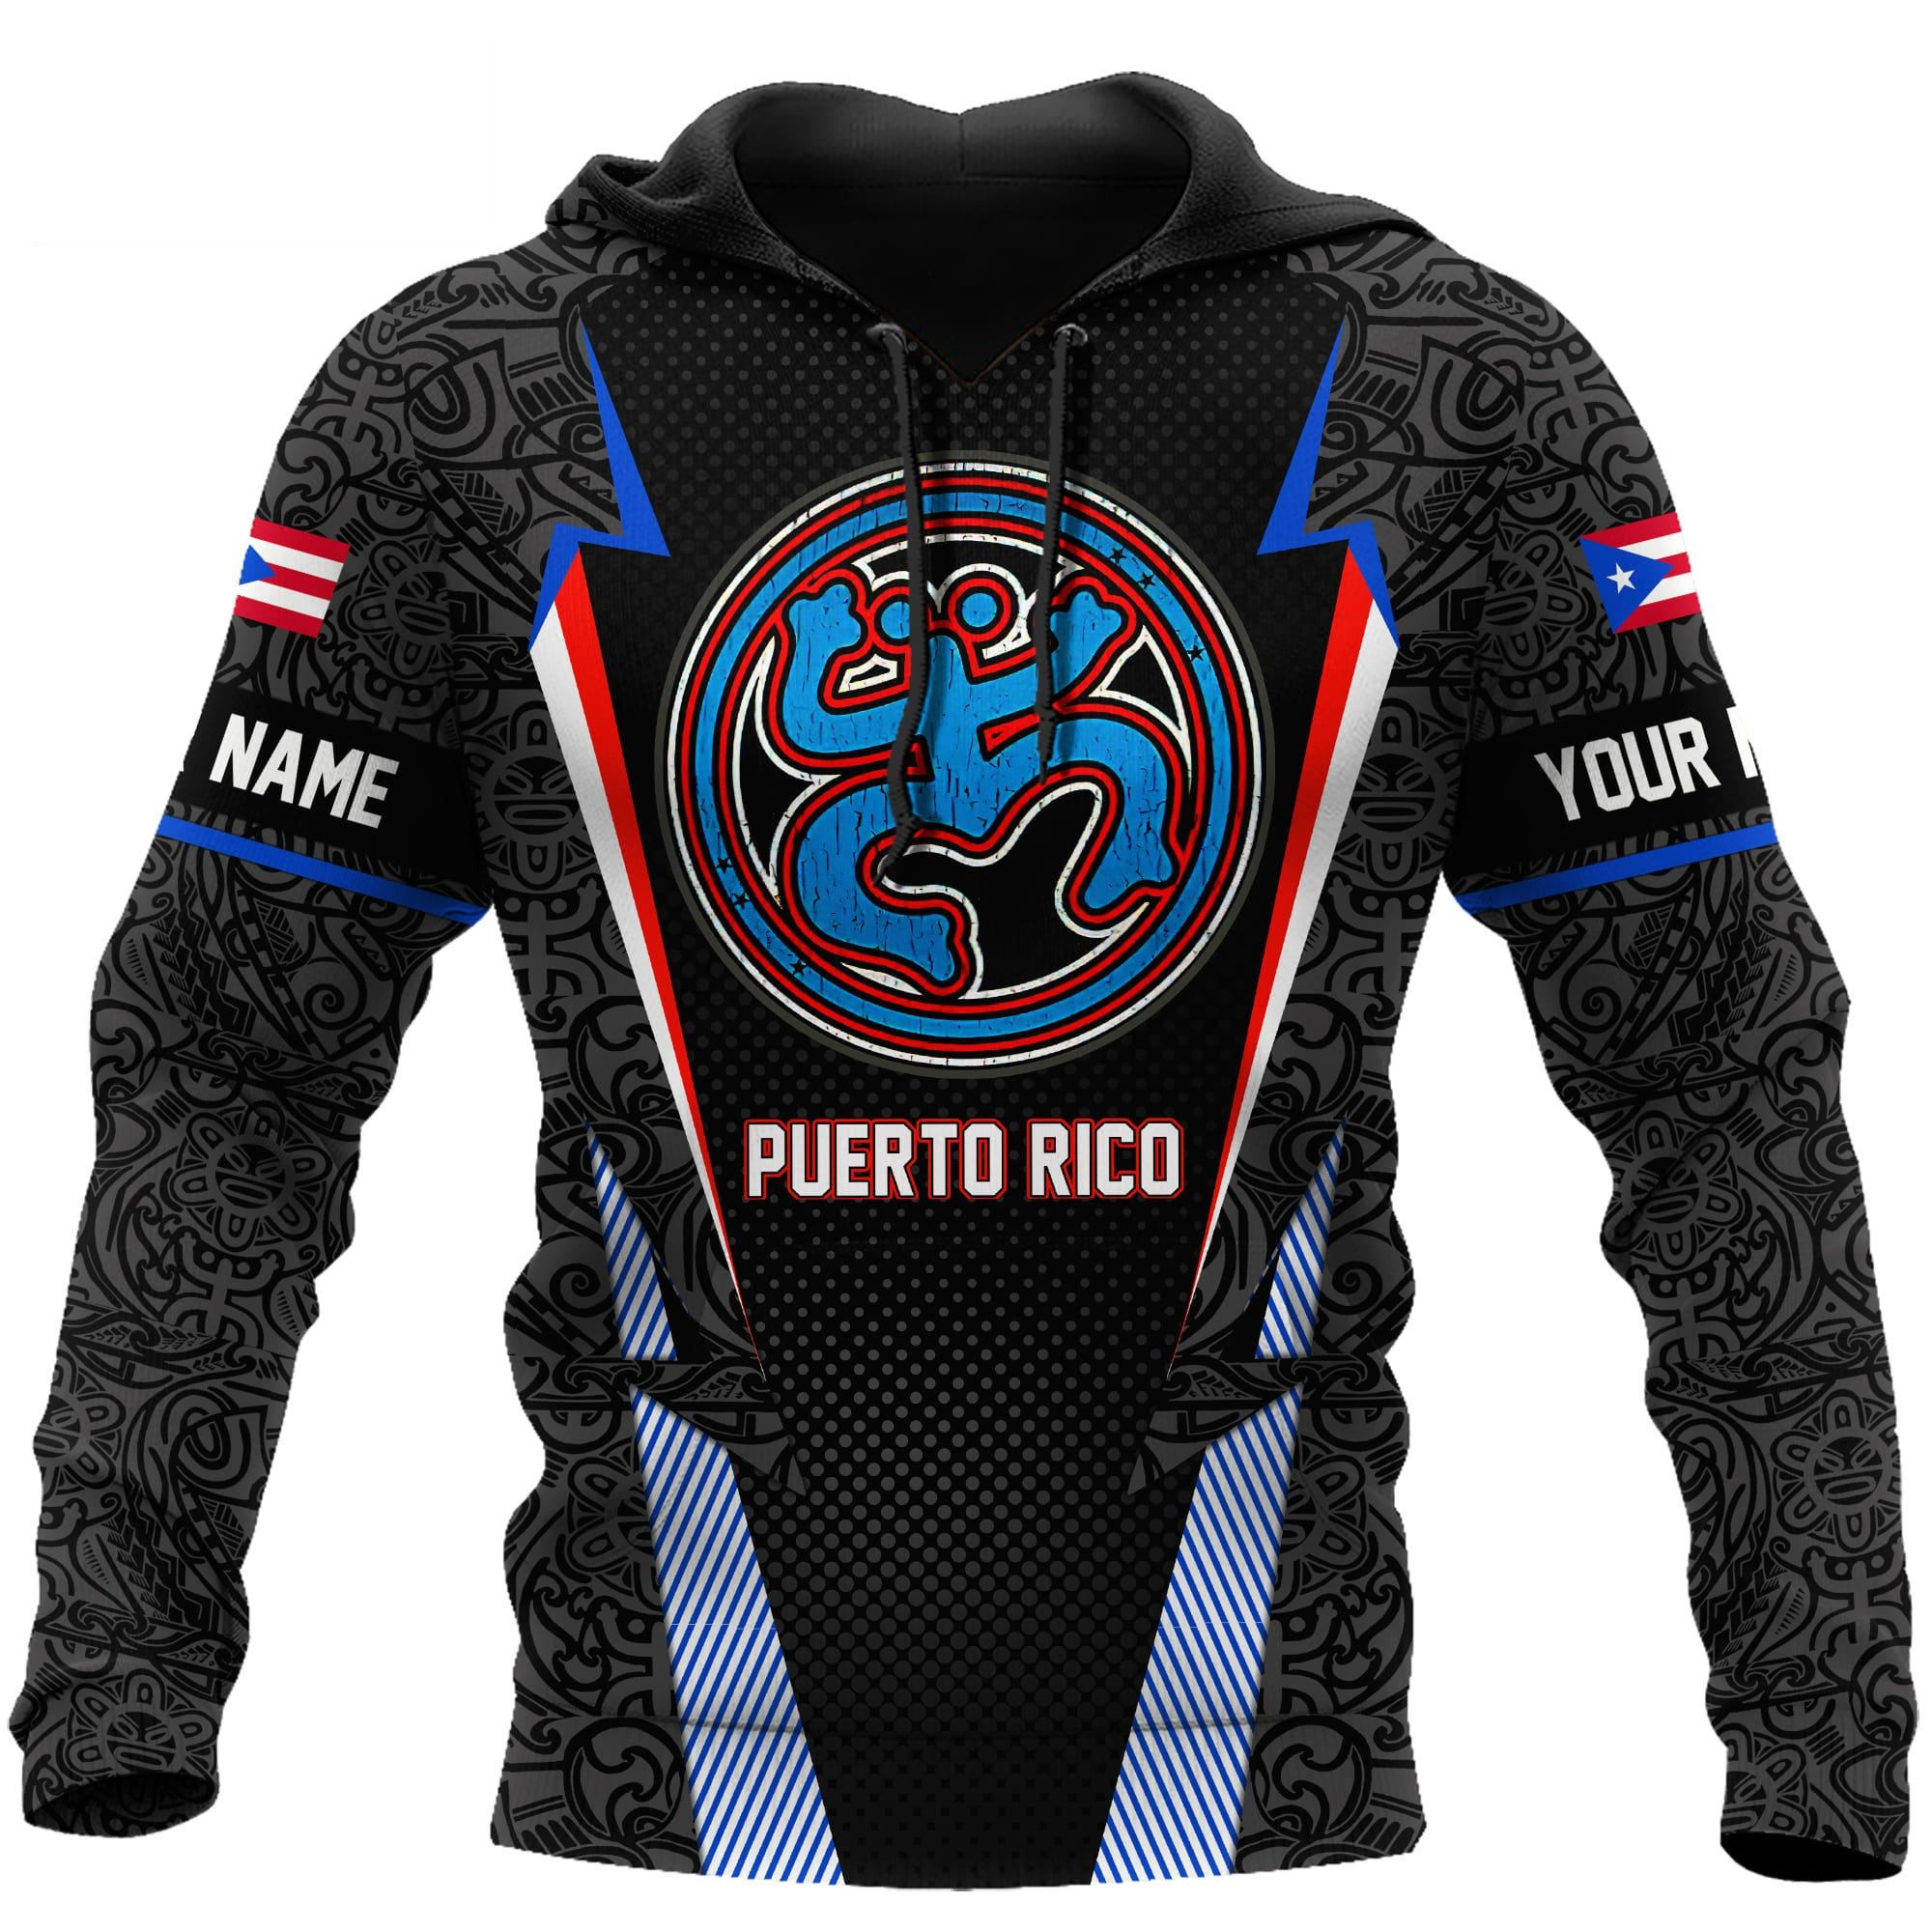 Personalized Peruto Rico Frog Coqui 3D Hoodie Shirt/ Puerto Rican Shirt for Men Women